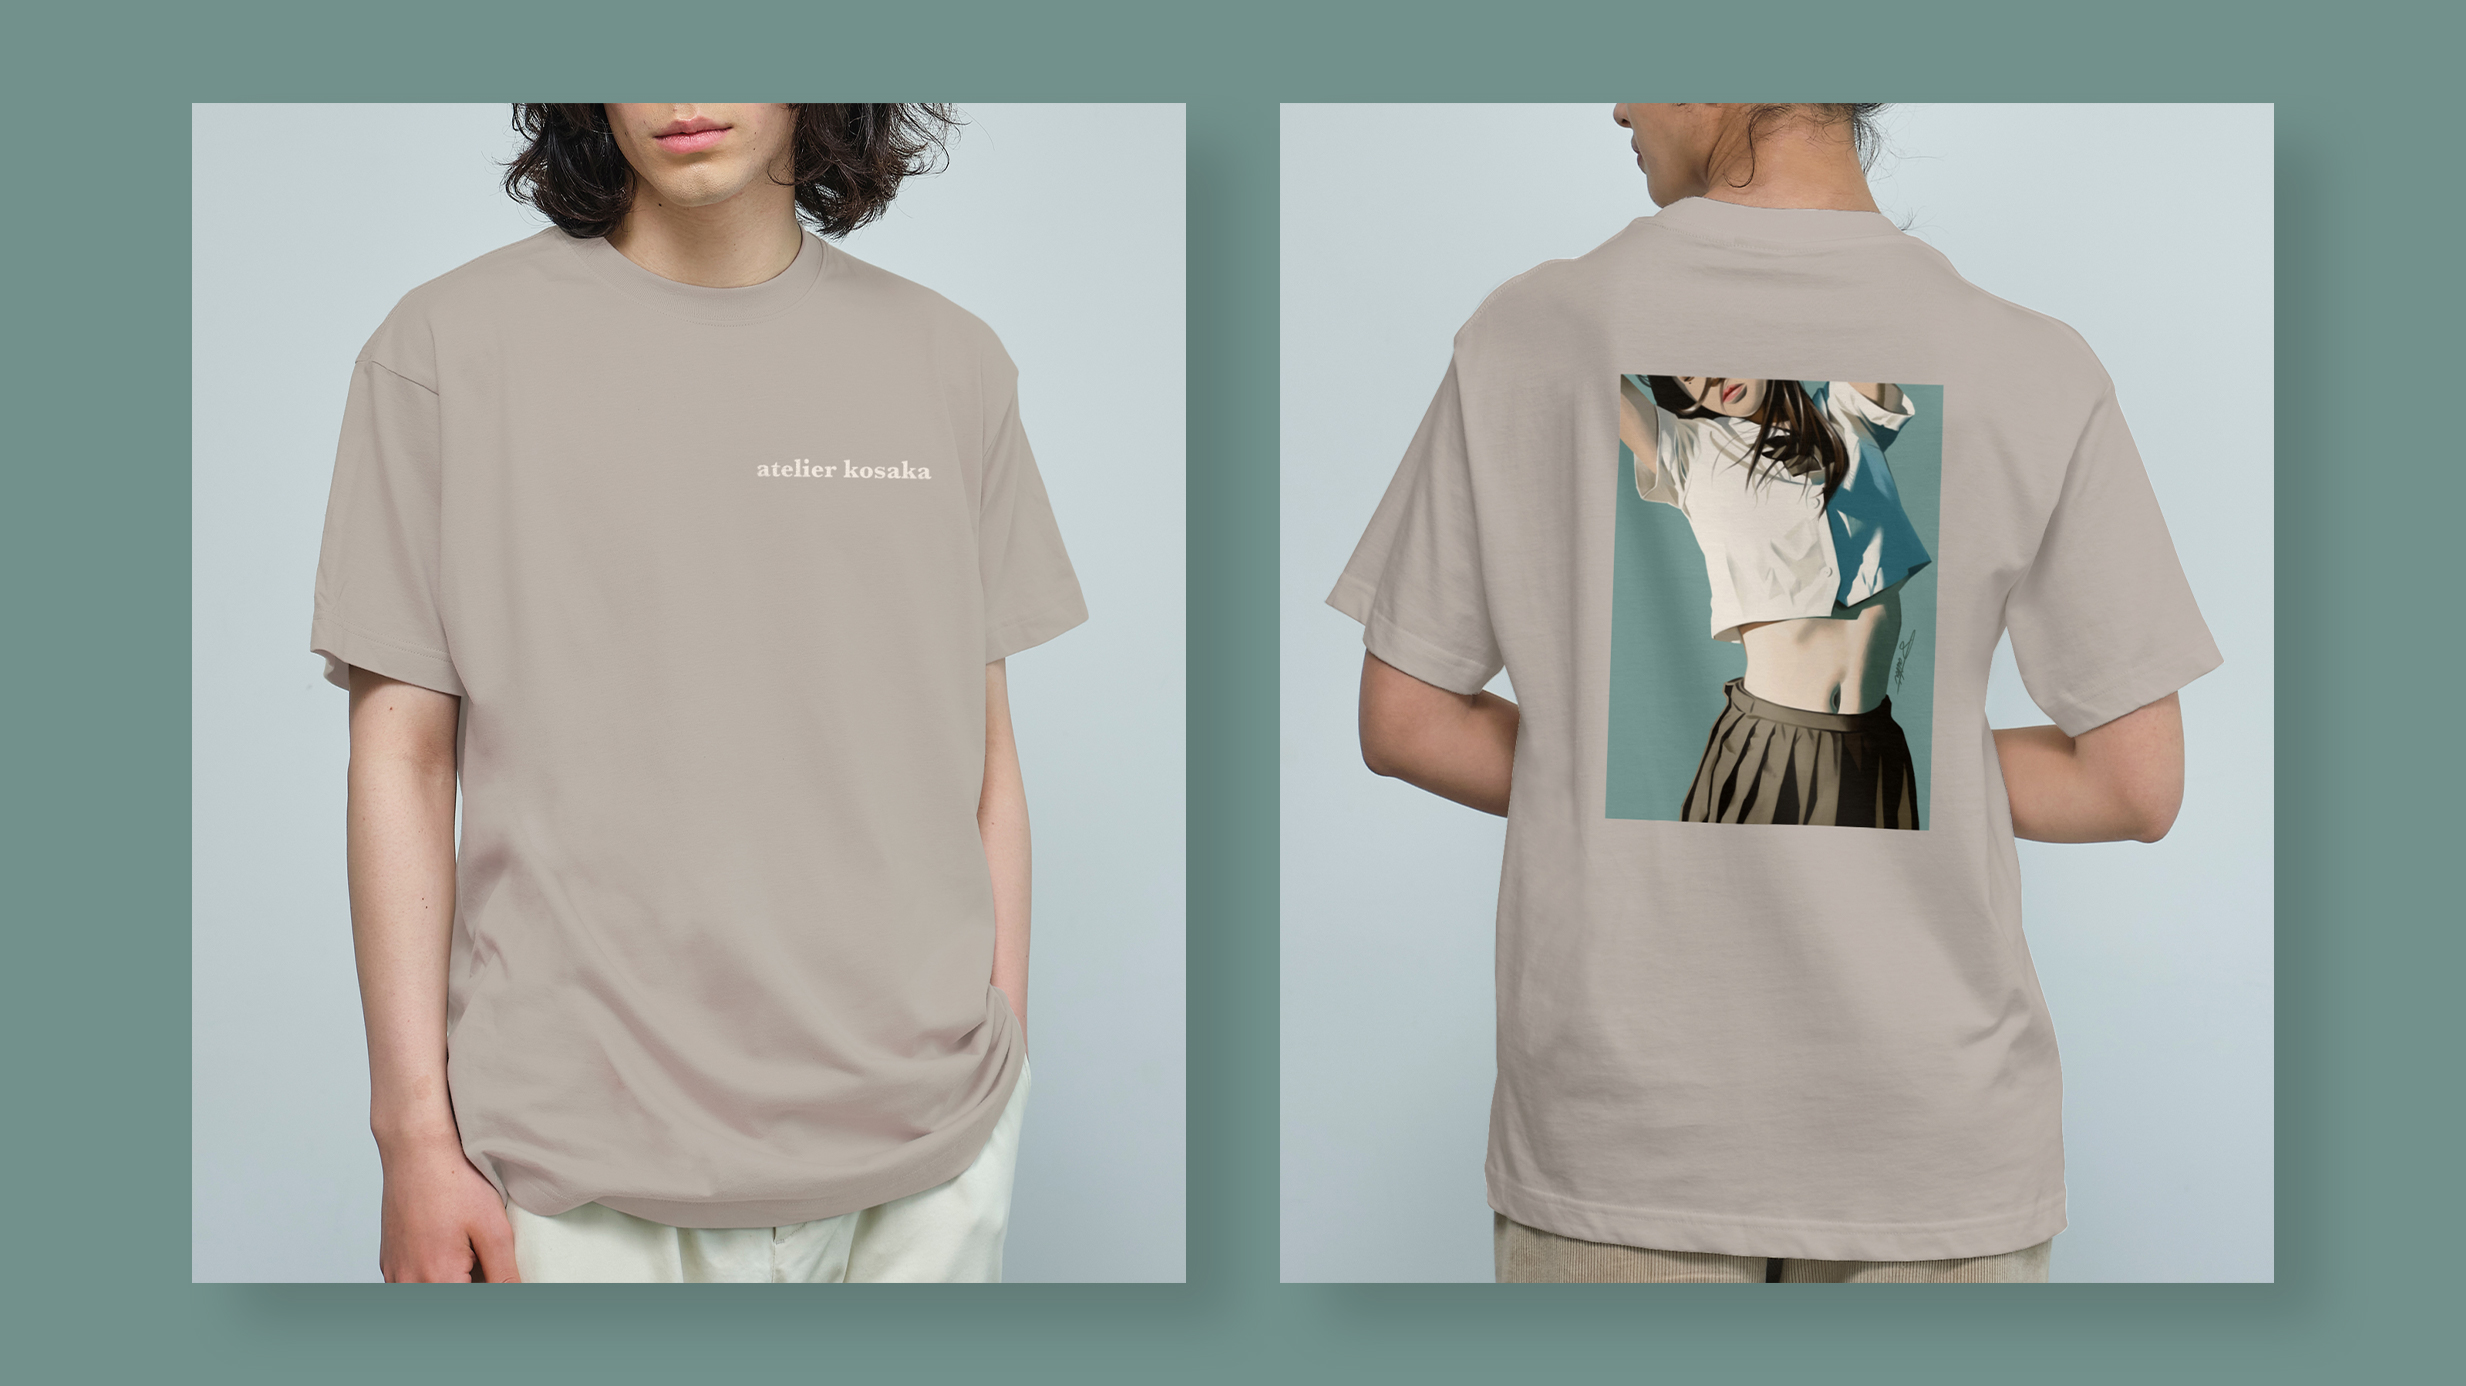 SUZURI Tシャツセール イラストレーター コサカダイキオリジナルTシャツデザイン